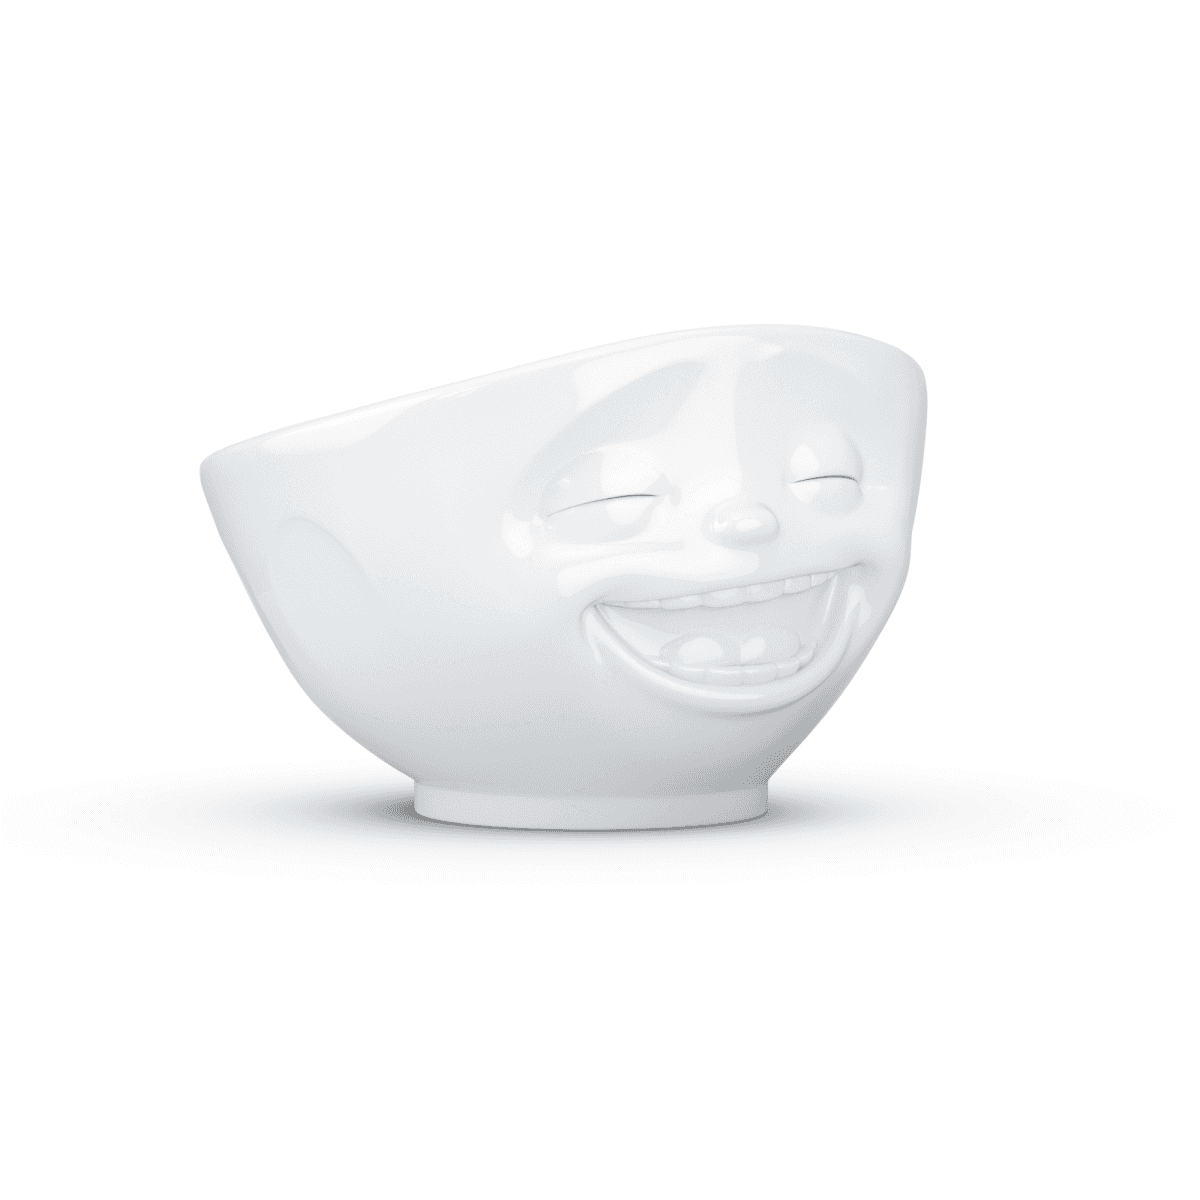 Immagine del prodotto Ciotola Risata 3D in Porcellana 500 ml | TASSEN By Fiftyeight Products